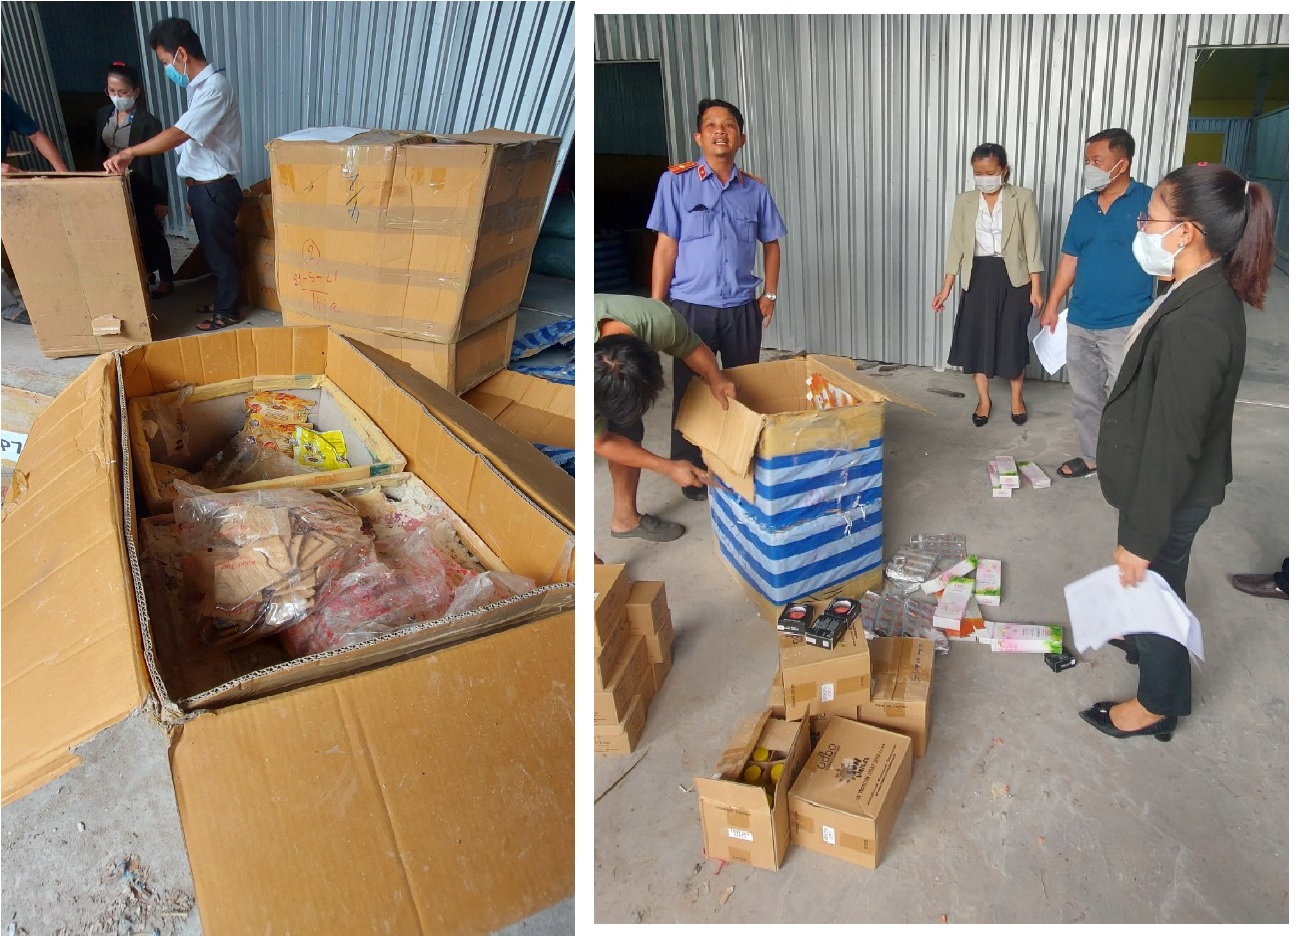 Chi cục Thi hành án dân sự huyện Dương Minh Châu tổ chức tiêu hủy vật chứng và chuyển giao tài sản sung công quỹ Nhà nước số lượng lớn cho cơ quan Tài chính cùng cấp